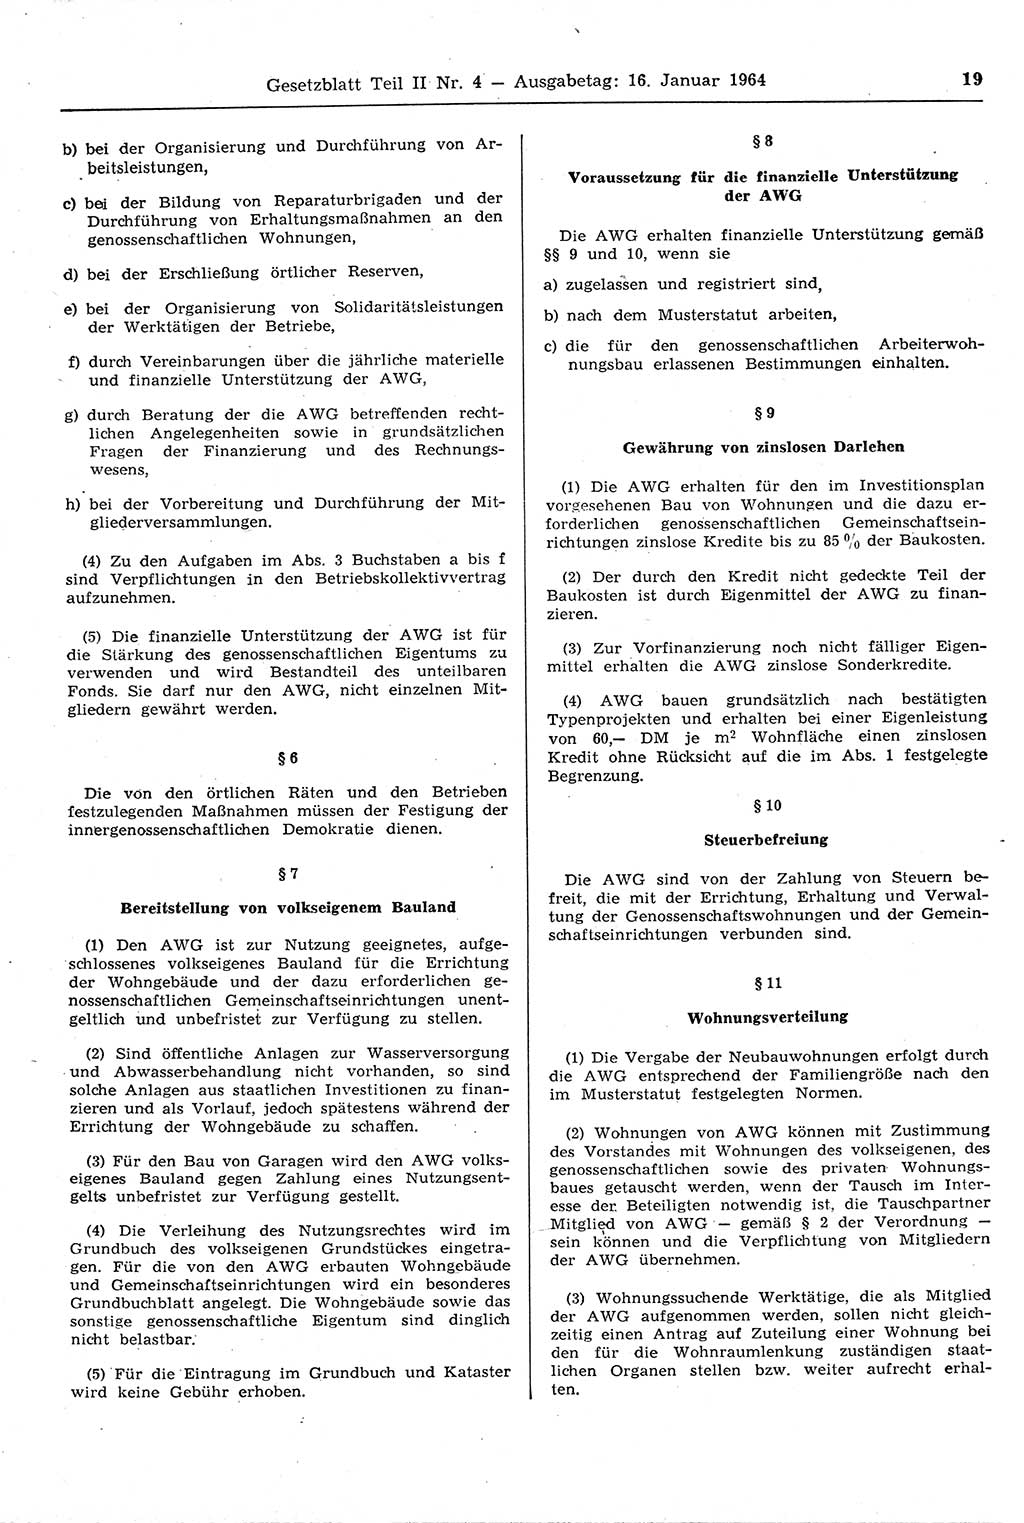 Gesetzblatt (GBl.) der Deutschen Demokratischen Republik (DDR) Teil ⅠⅠ 1964, Seite 19 (GBl. DDR ⅠⅠ 1964, S. 19)